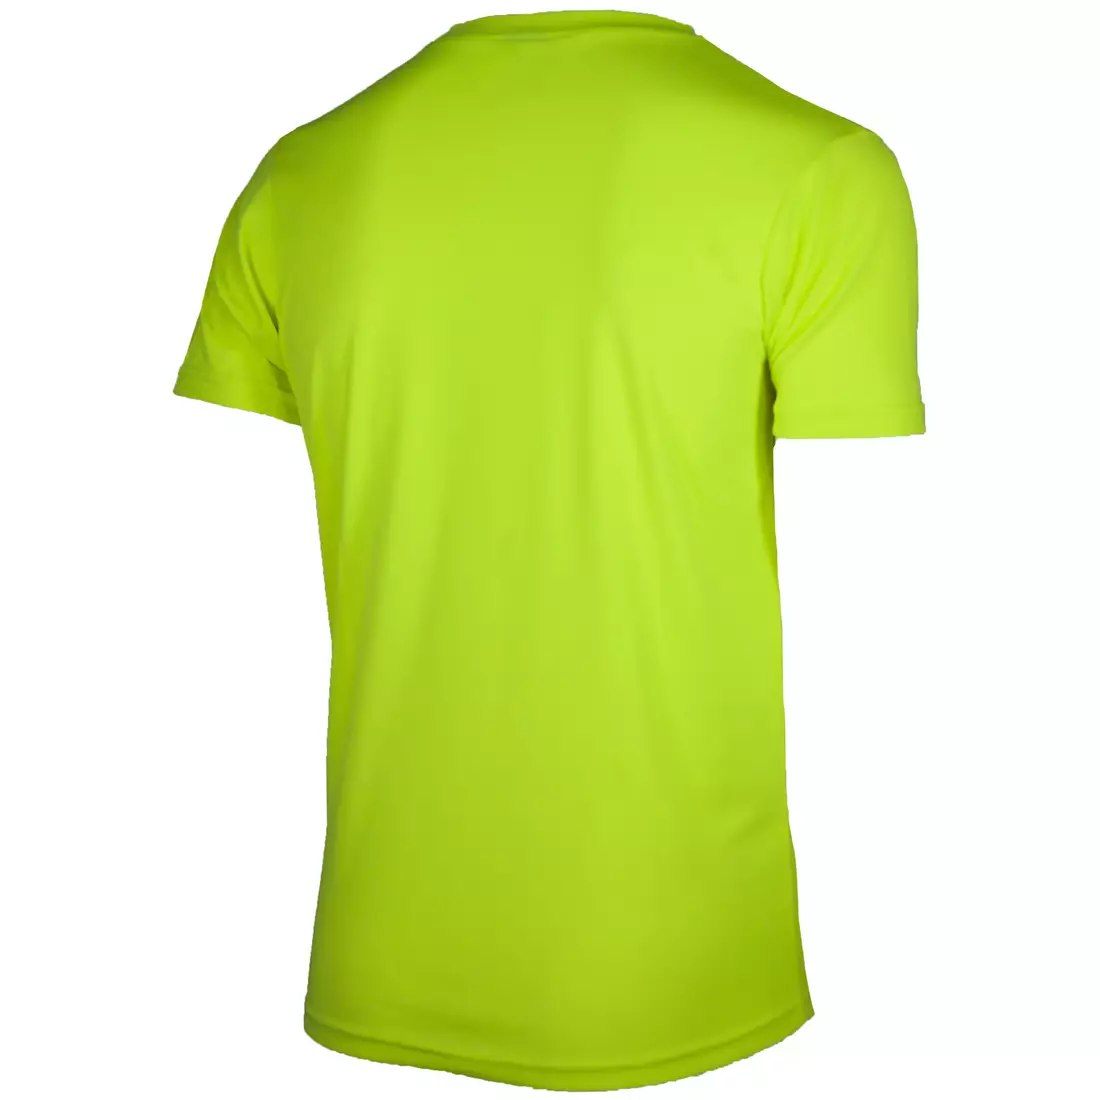 ROGELLI RUN PROMOTION pánské sportovní tričko s krátkým rukávem, fluor-žlutý